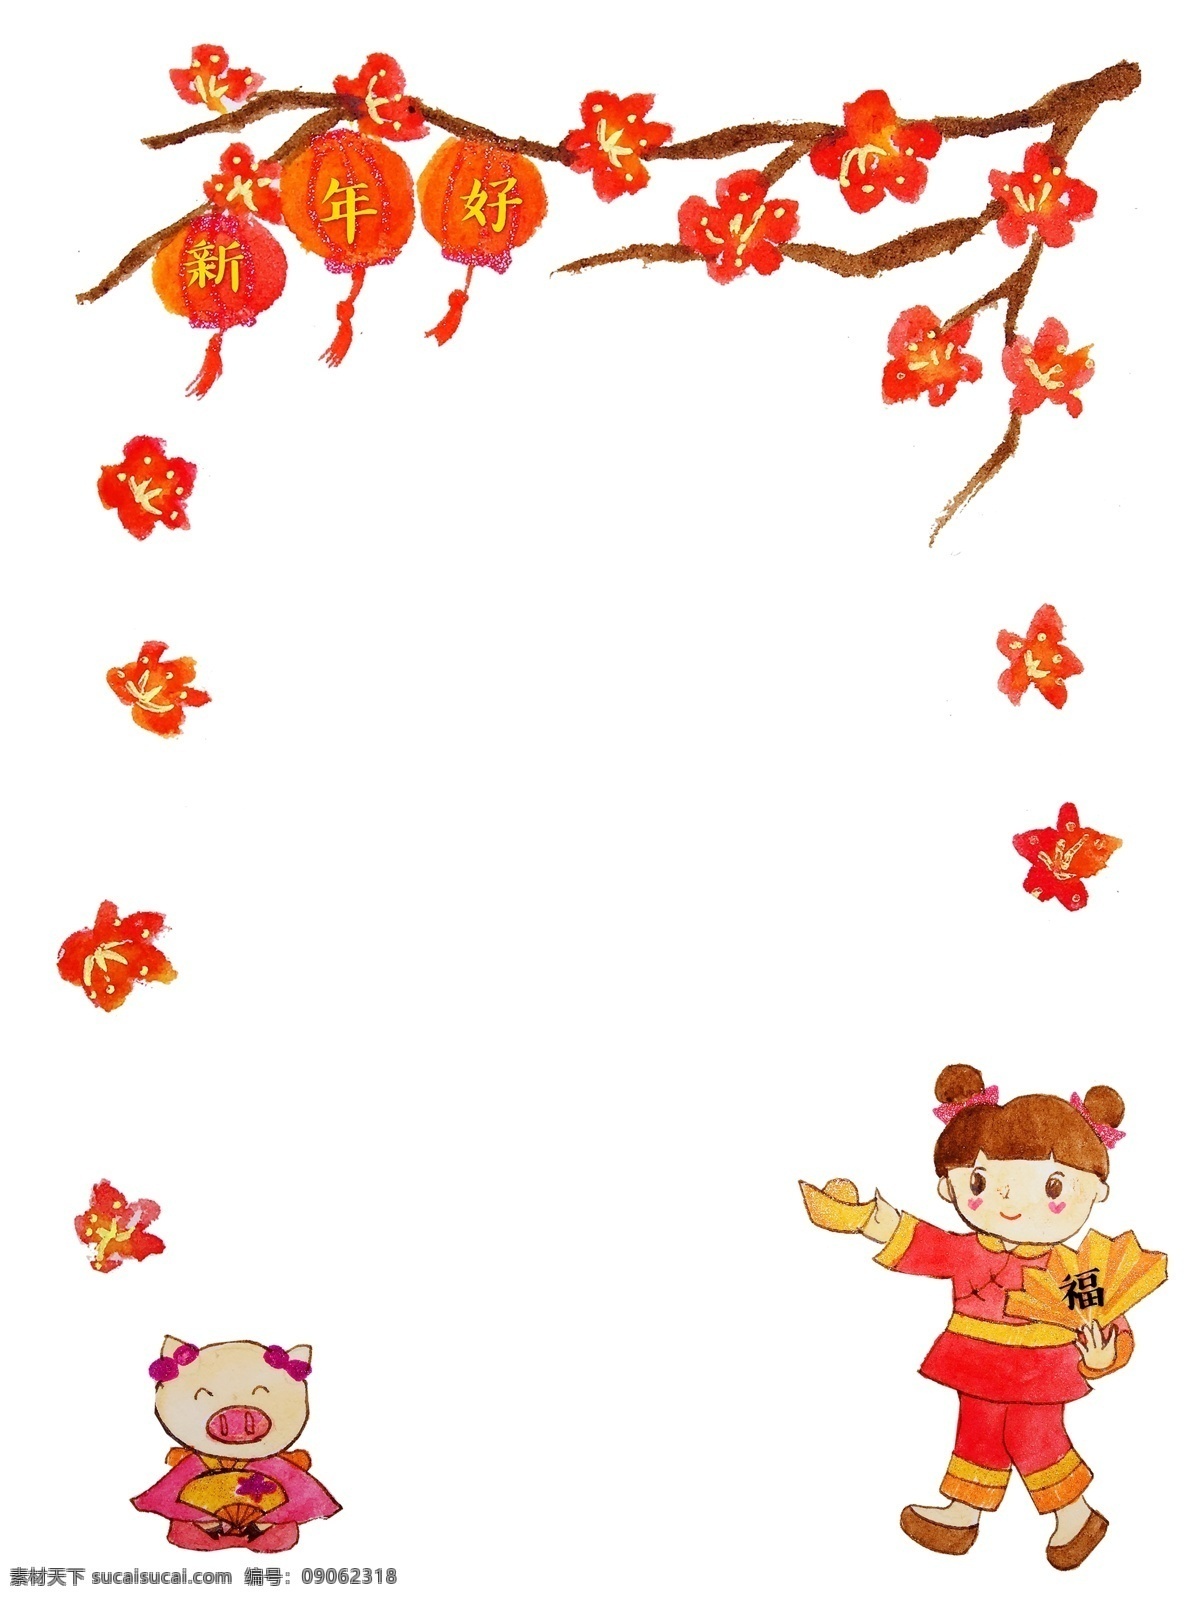 春节 中国 风 传统 喜庆 新年 简约 边框 手绘 卡通 猪年 灯笼 新年好 中国风 红色 梅花 花朵 福娃 手绘插画